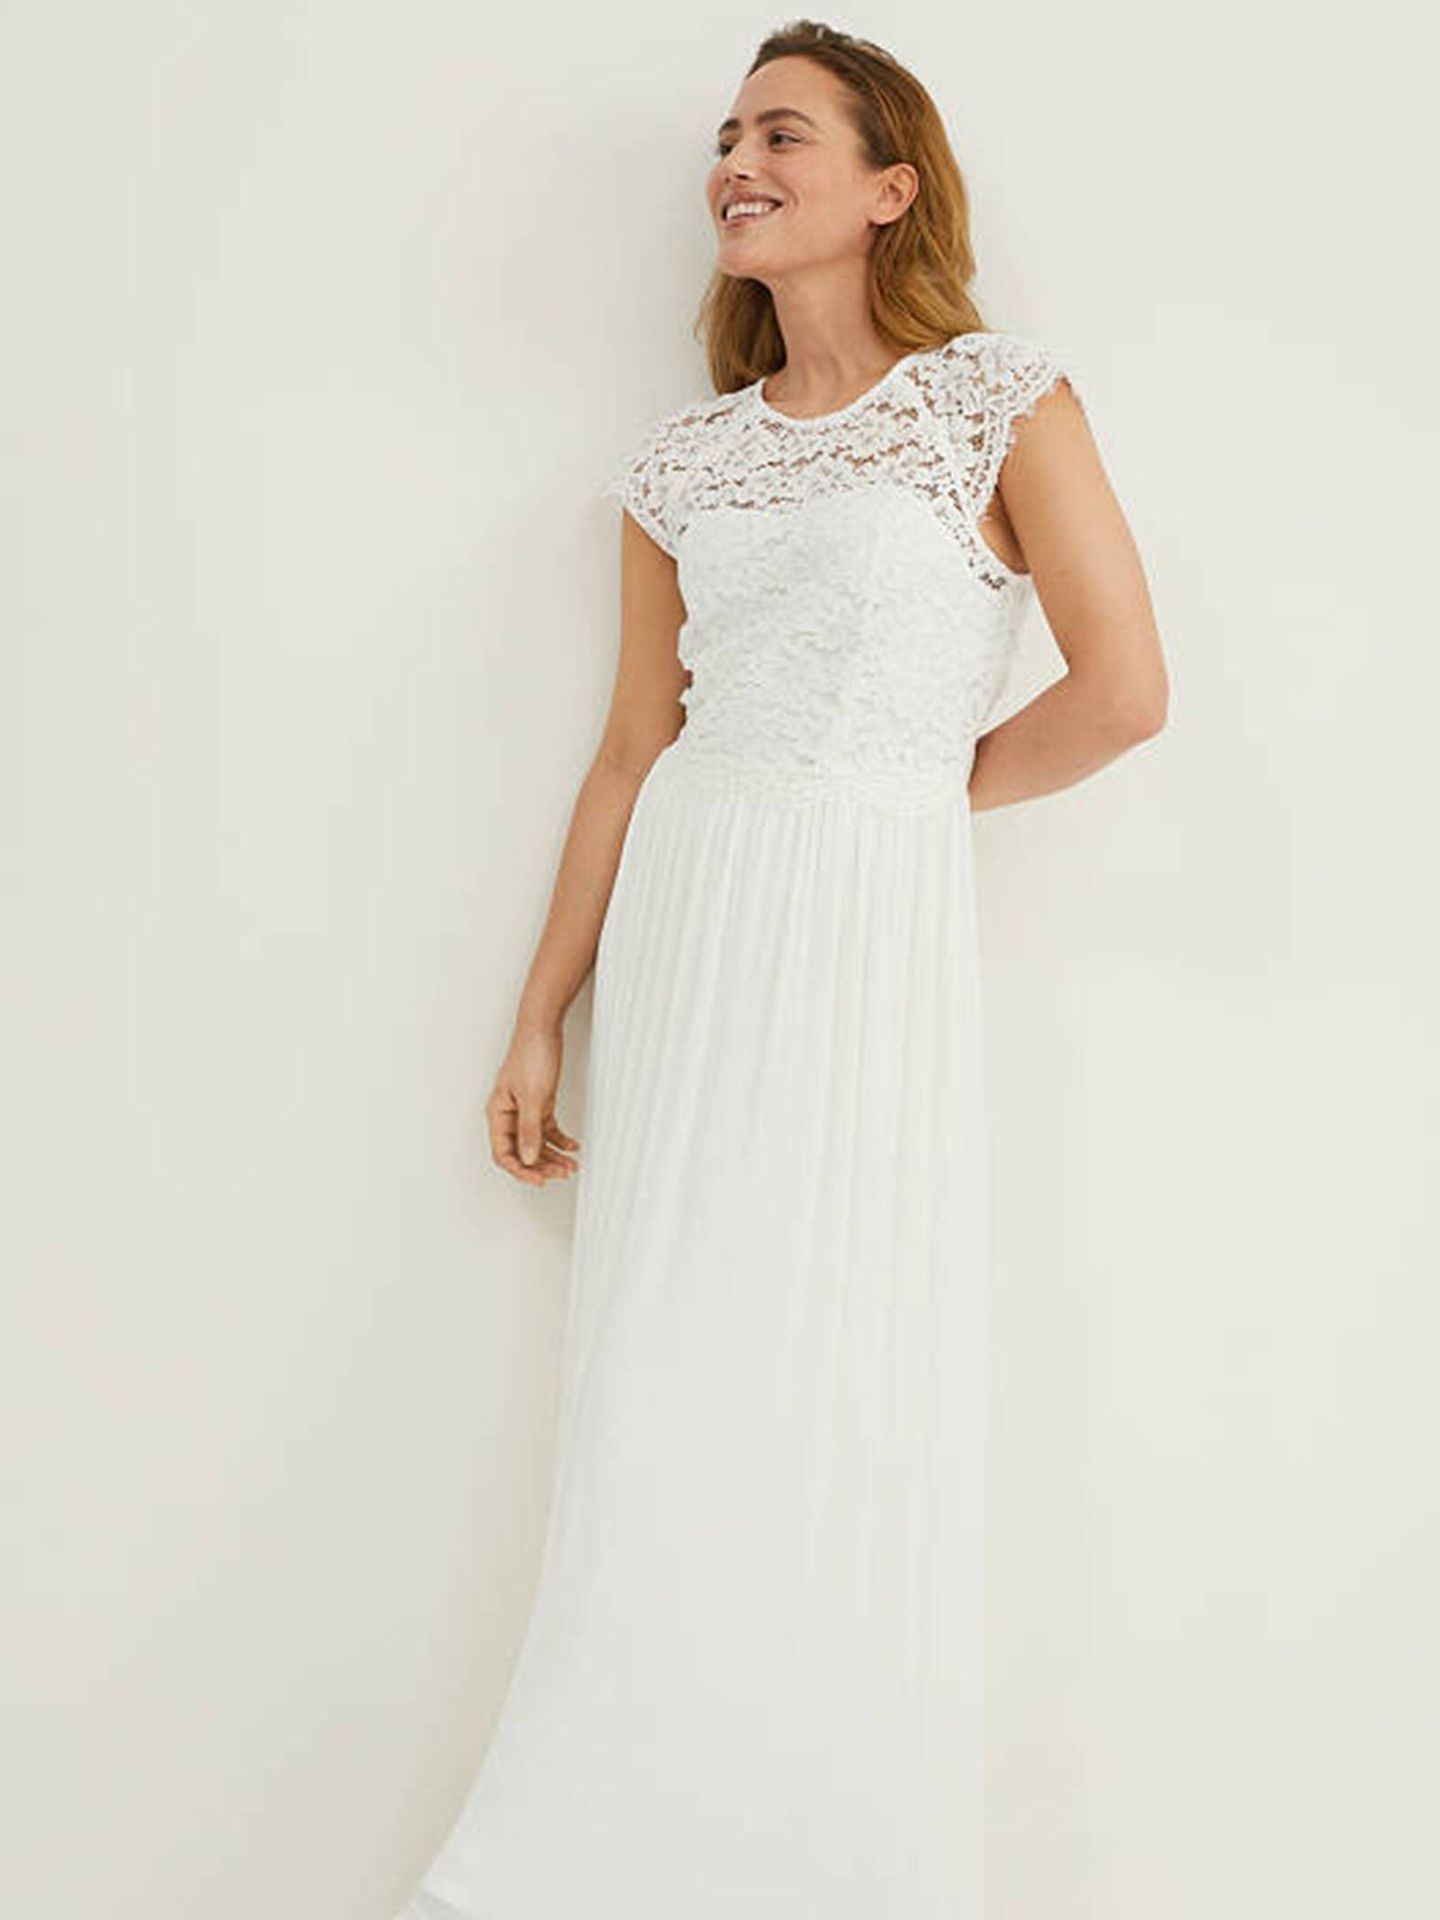 Vestido de novia blanco, elegante y low cost. (CyA/Cortesía)